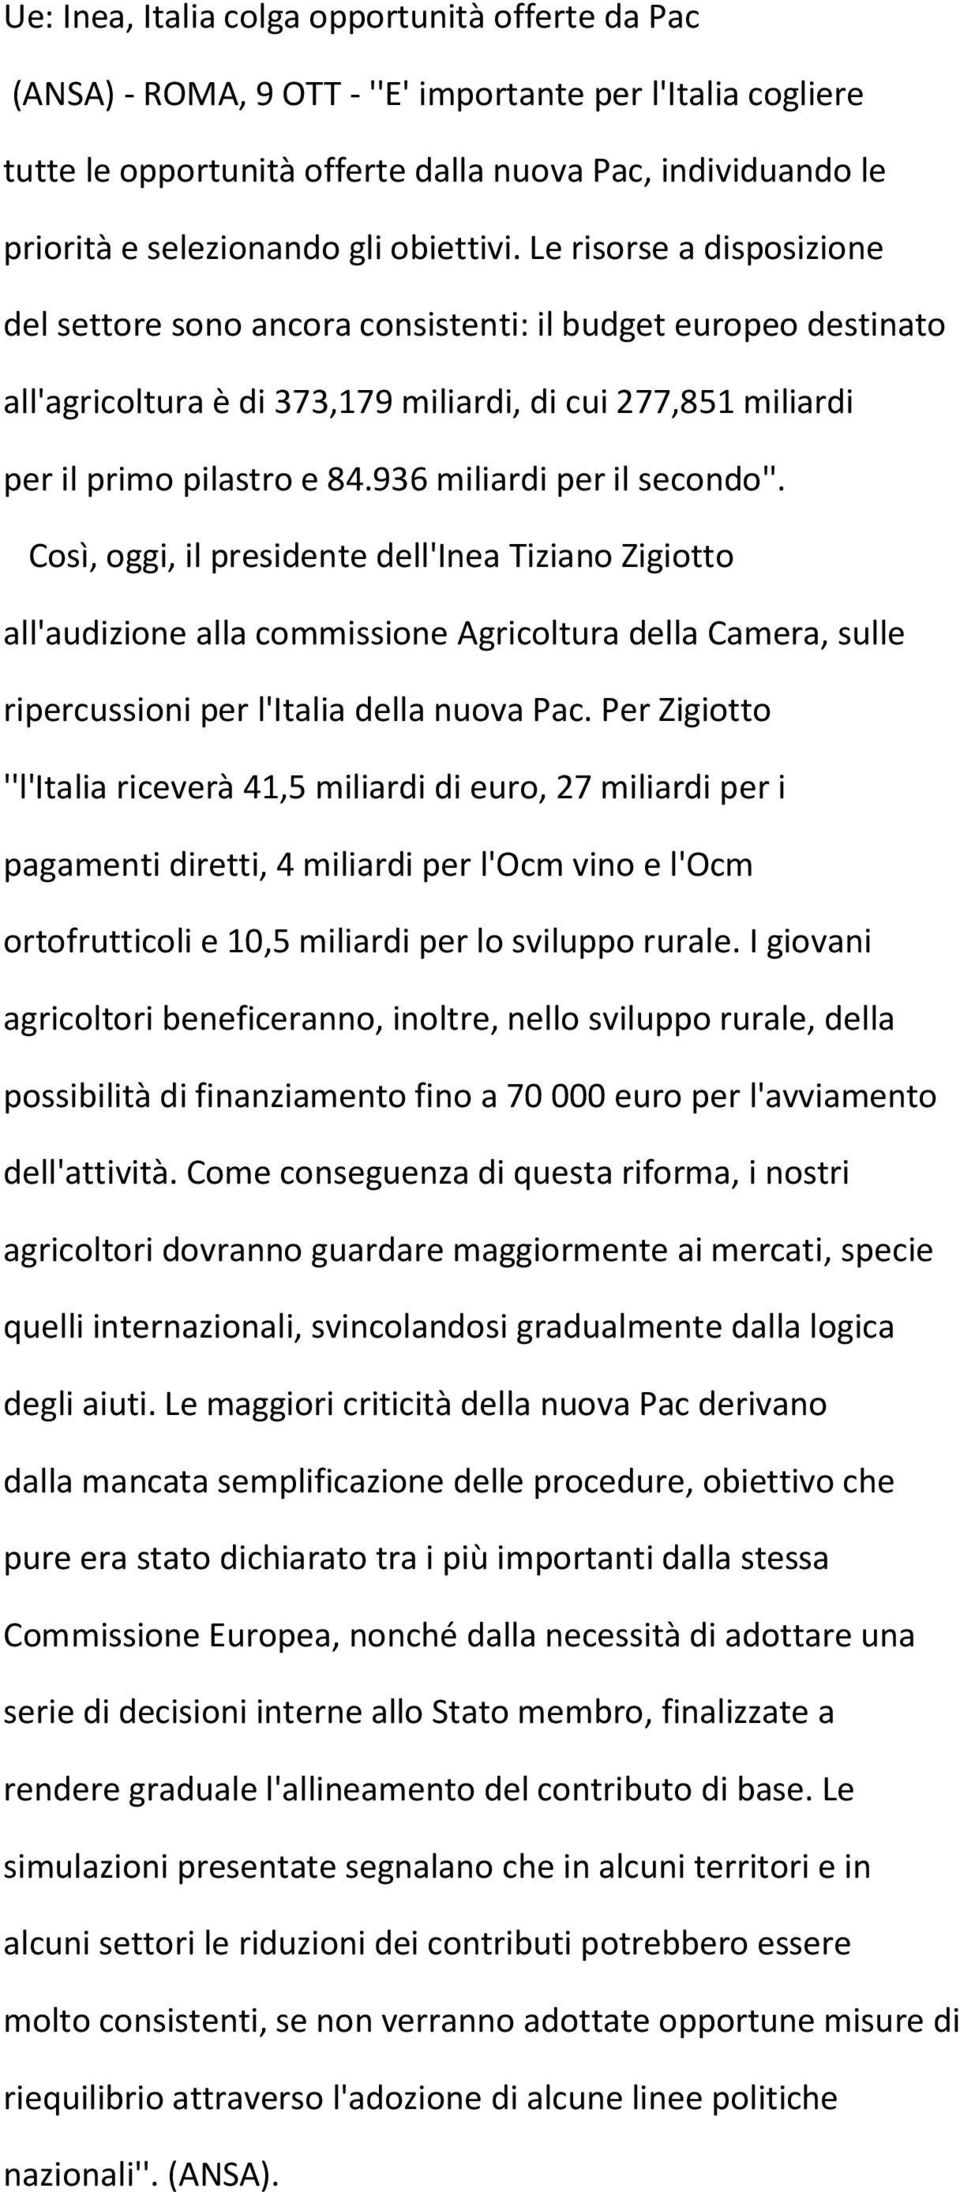 936 miliardi per il secondo''. Così, oggi, il presidente dell'inea Tiziano Zigiotto all'audizione alla commissione Agricoltura della Camera, sulle ripercussioni per l'italia della nuova Pac.